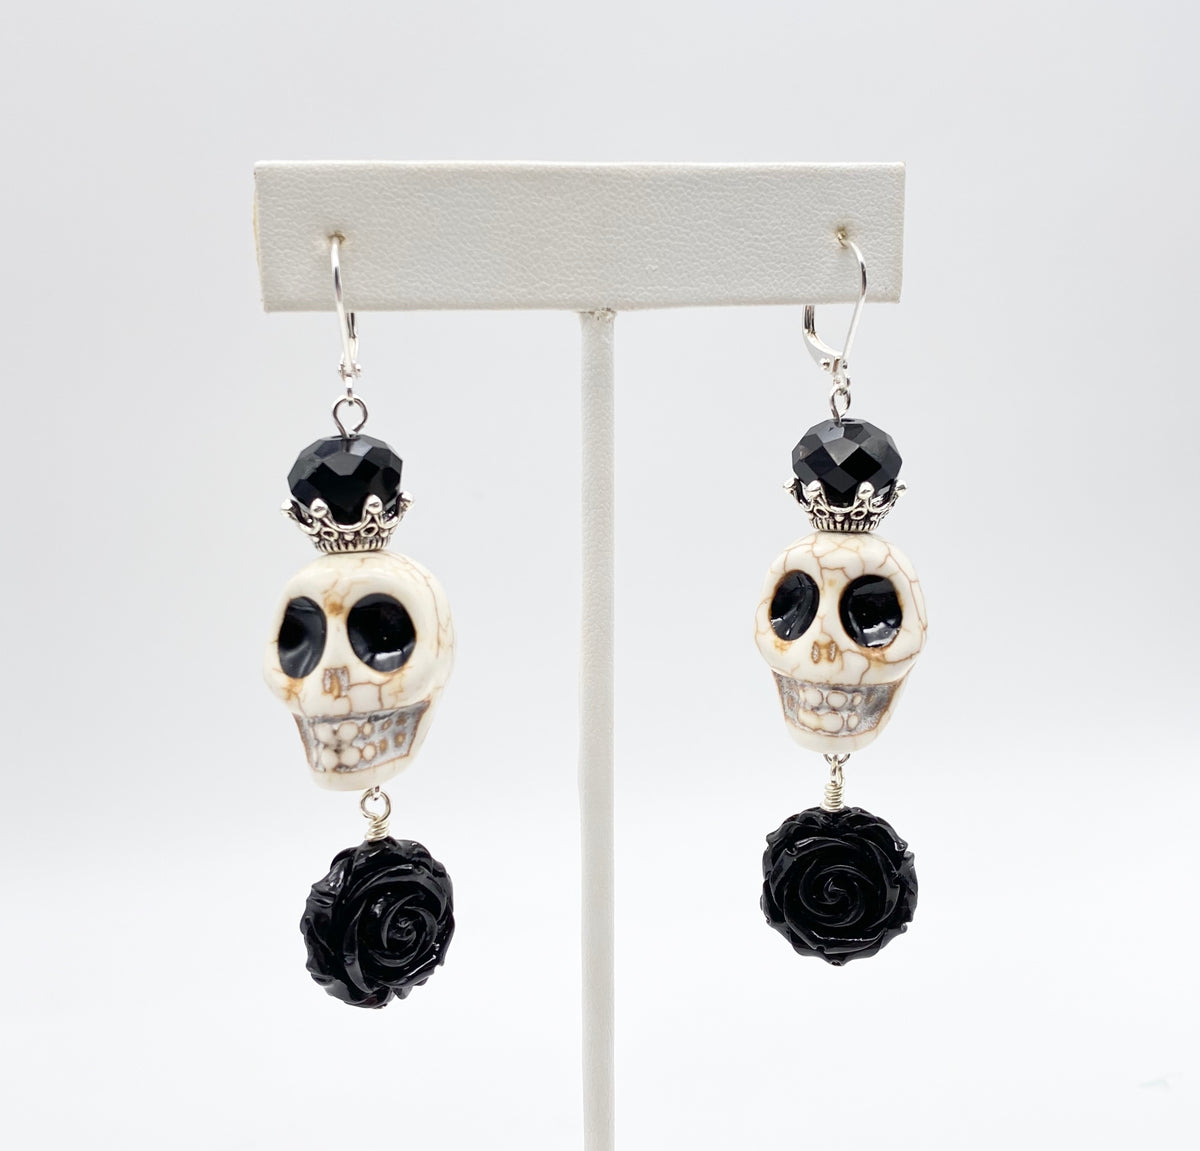 Dancing Skeleton earrings